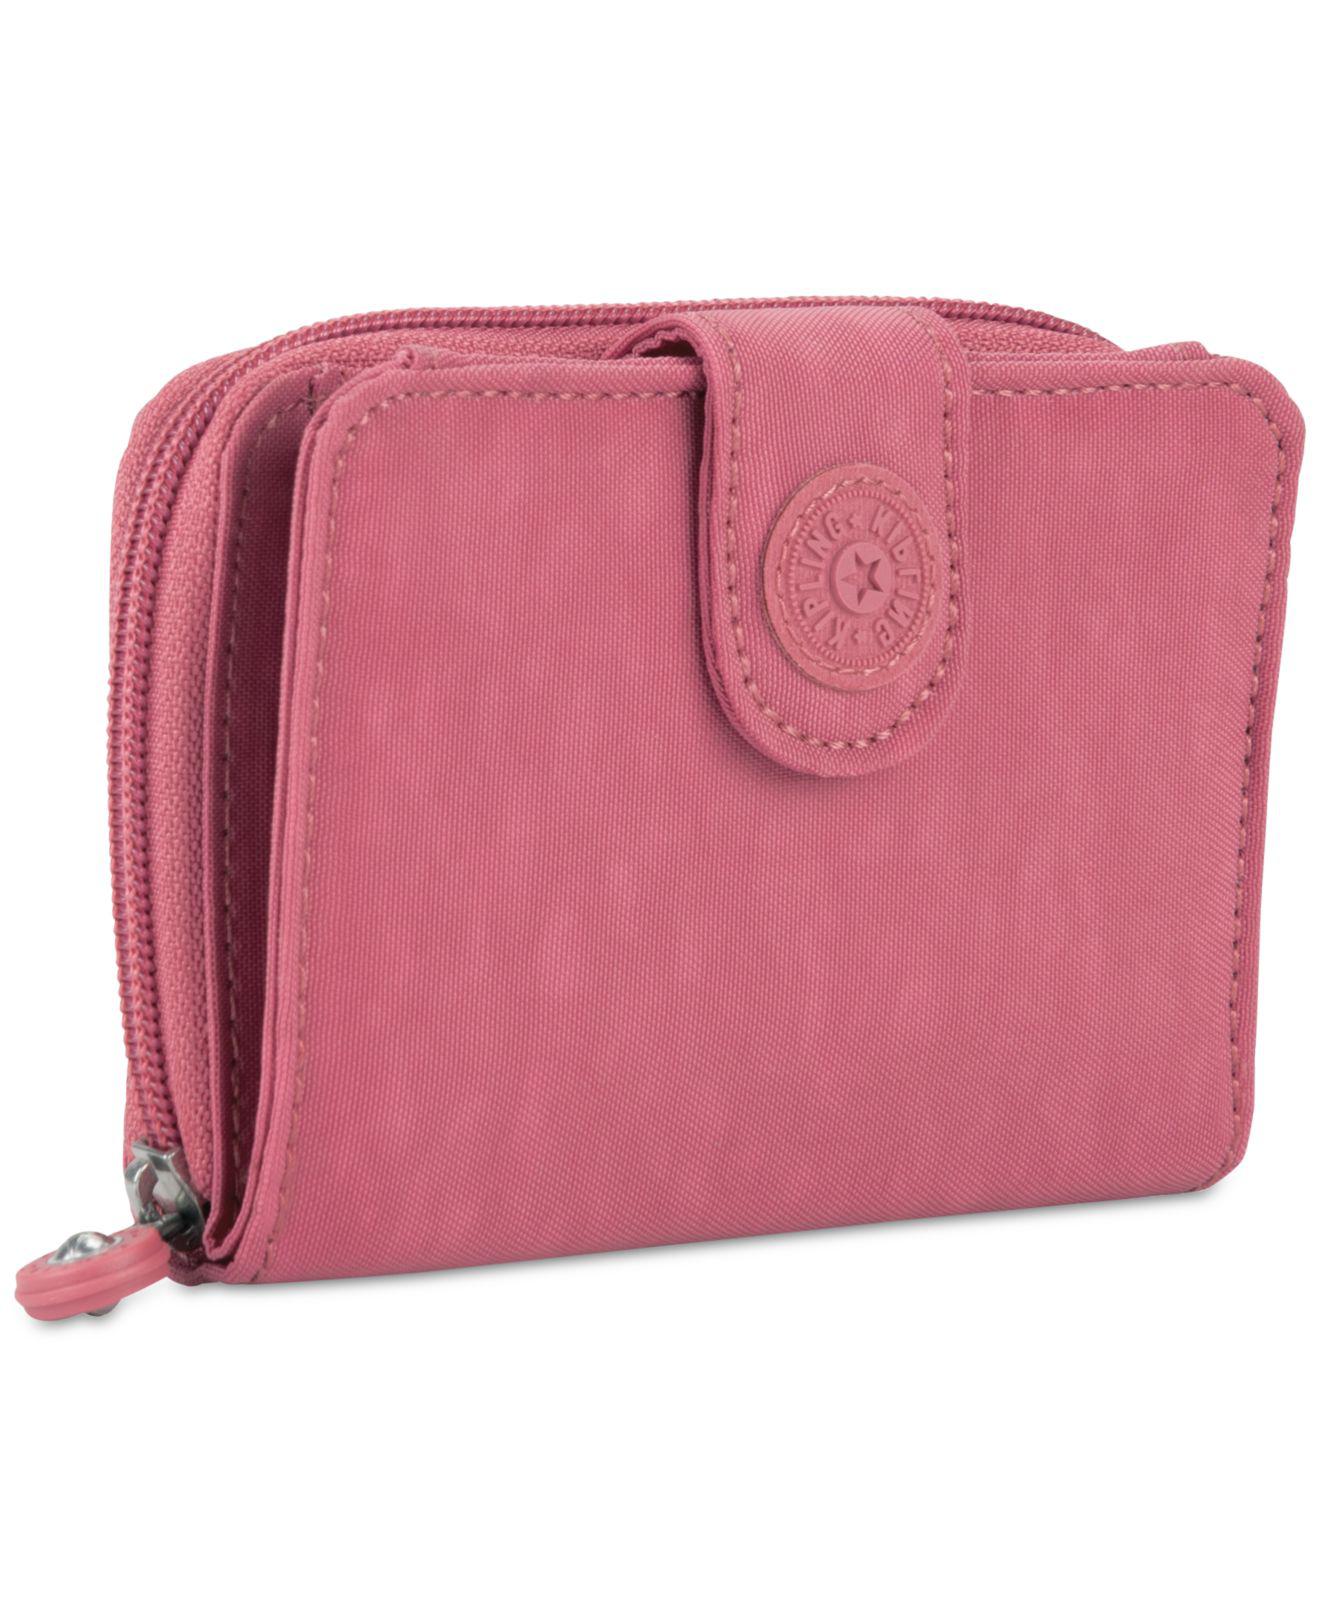 Kipling New Money Wallet in Pink - Lyst